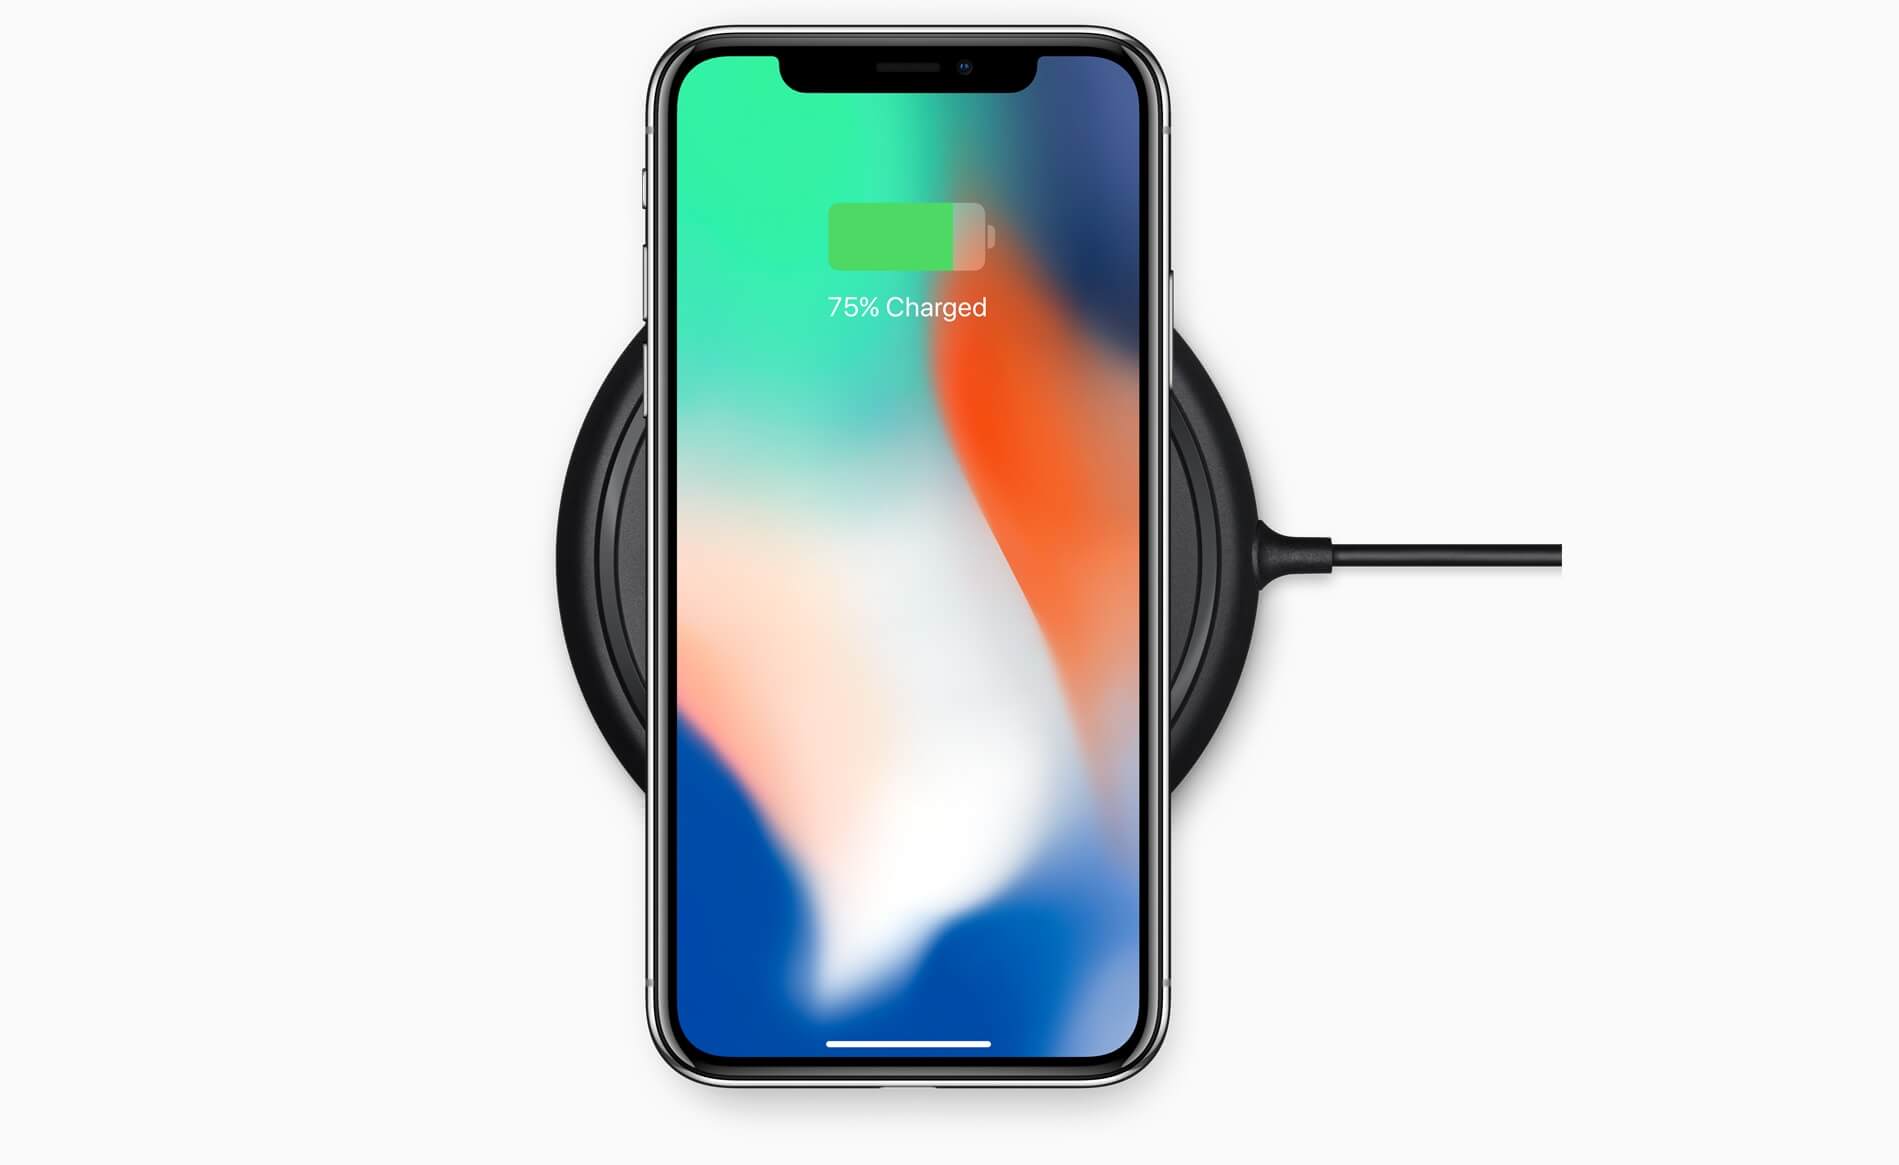 iphonex charging